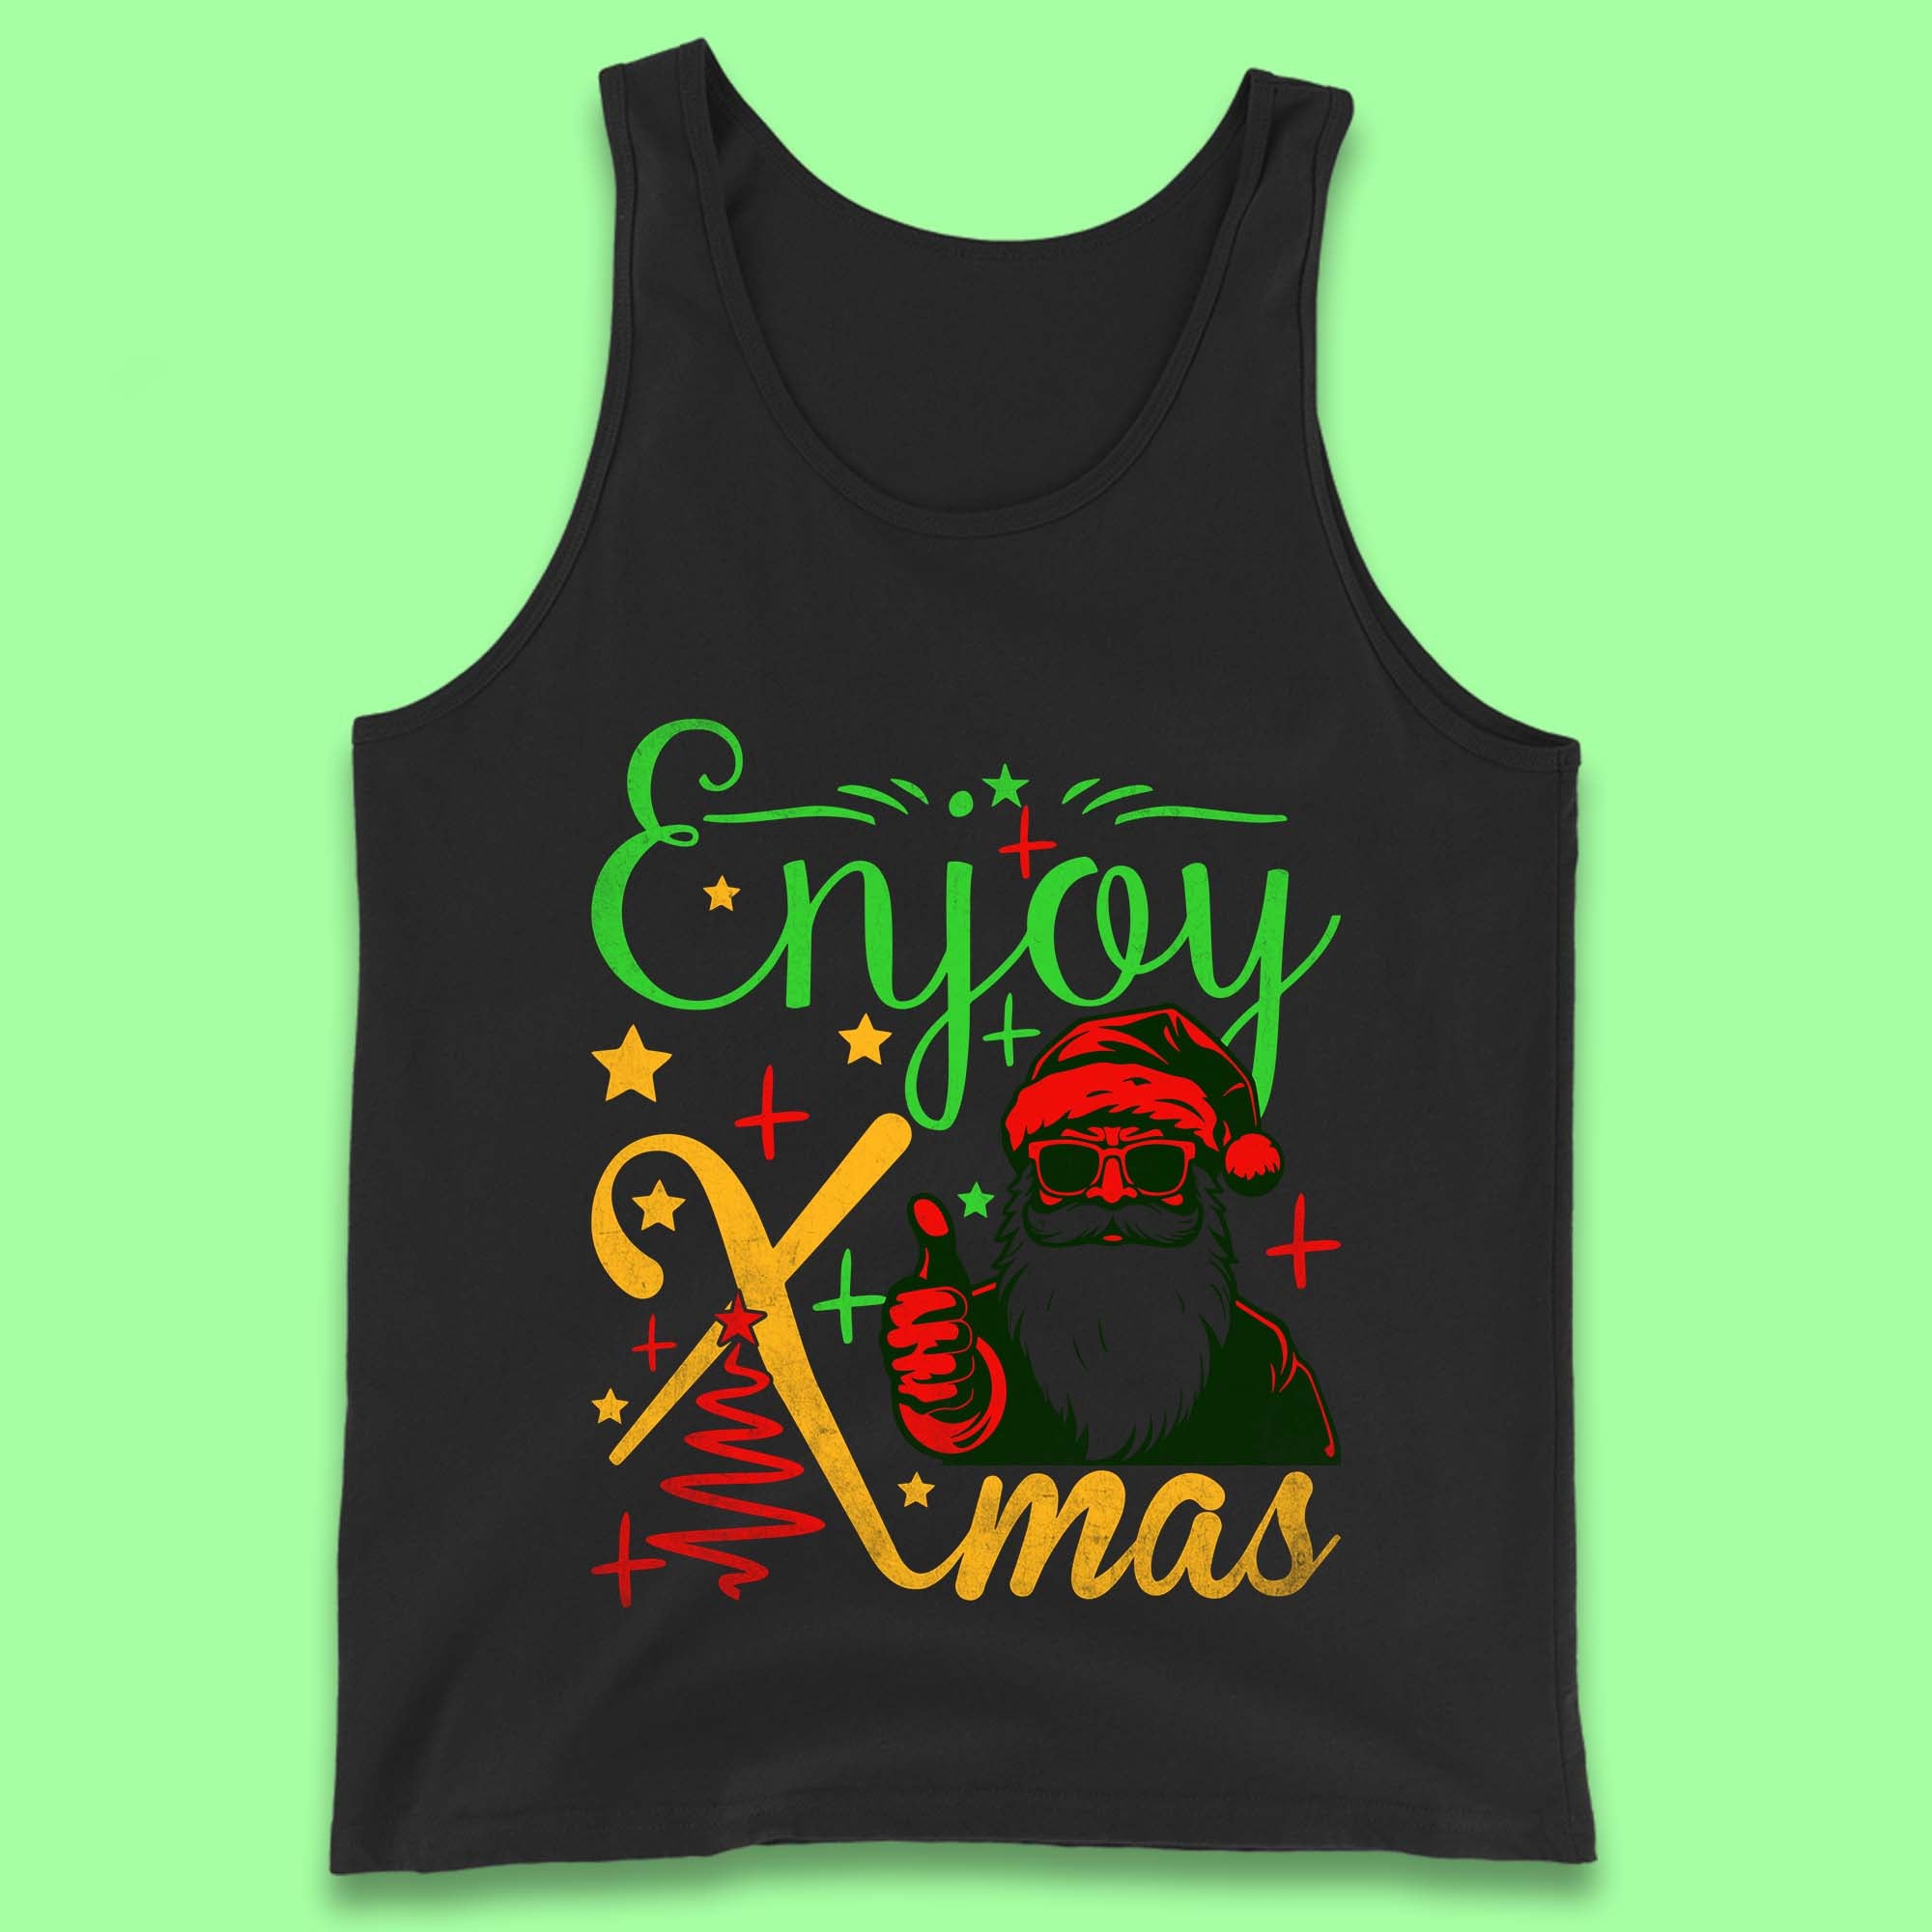 Enjoy Xmas Santa Claus Thumbs Up Merry Christmas Holiday Season Tank Top